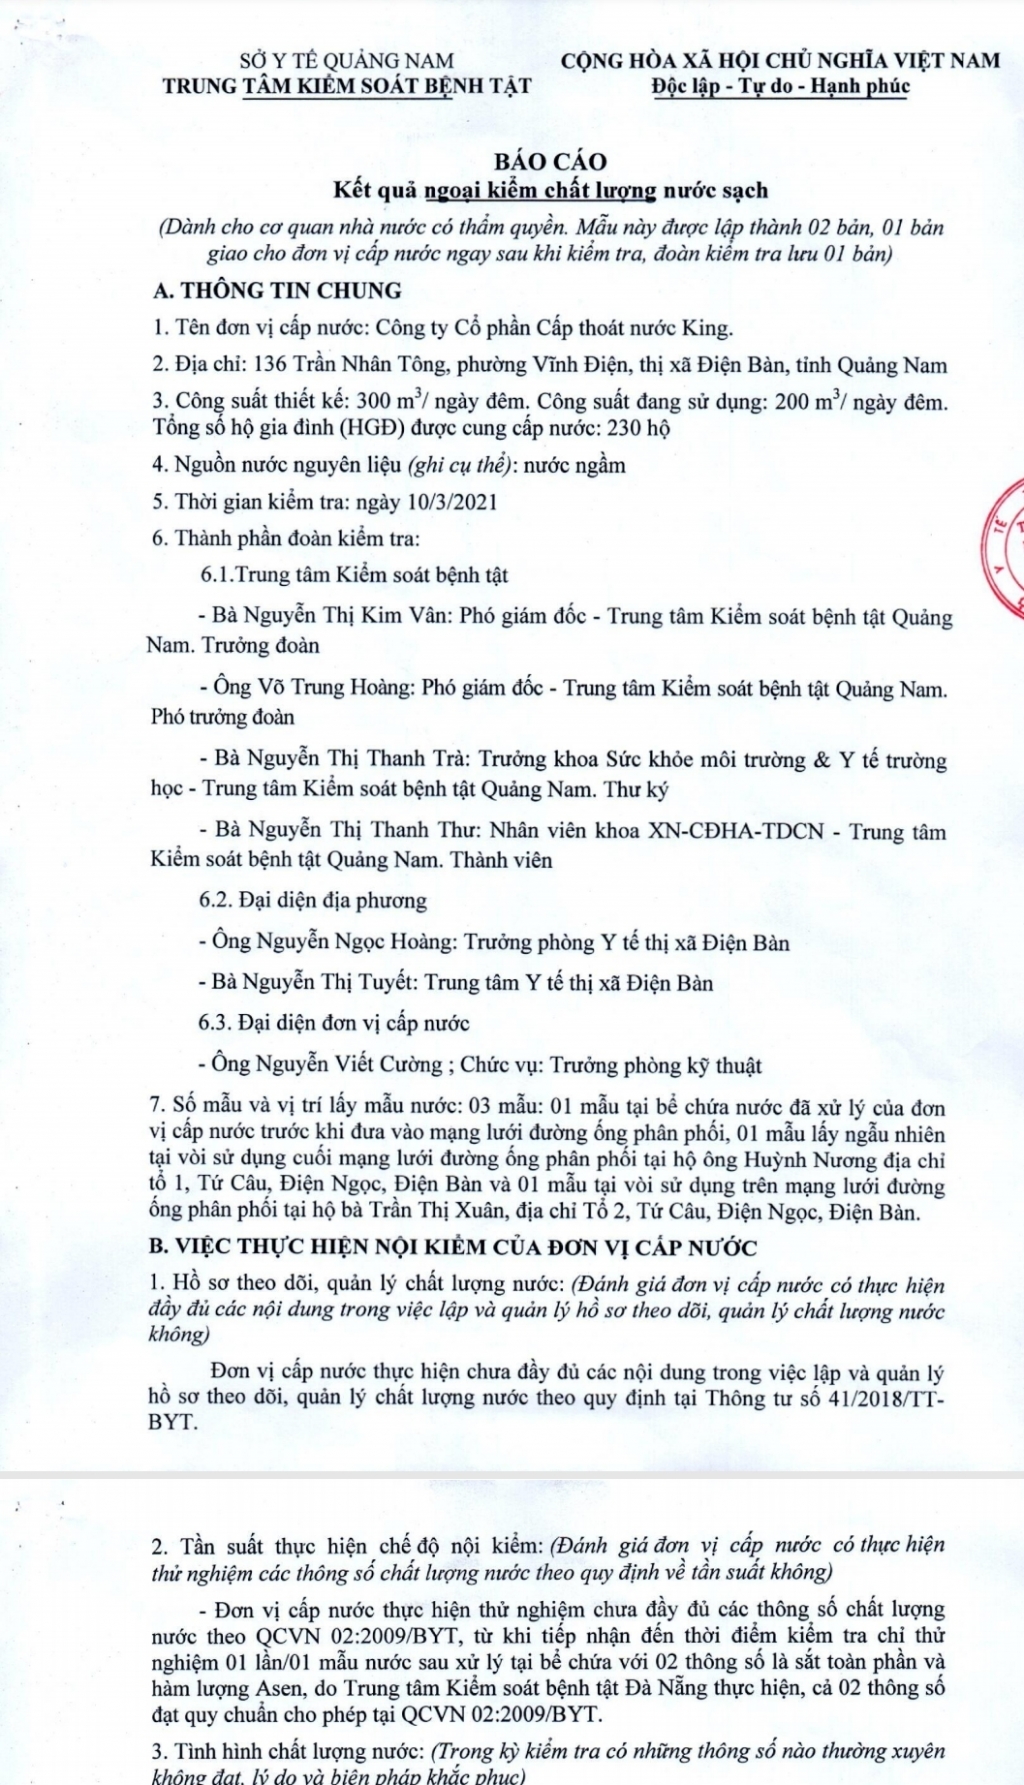 Quảng Nam: Công ty King không công khai, báo cáo chất lượng nước sạch theo quy định